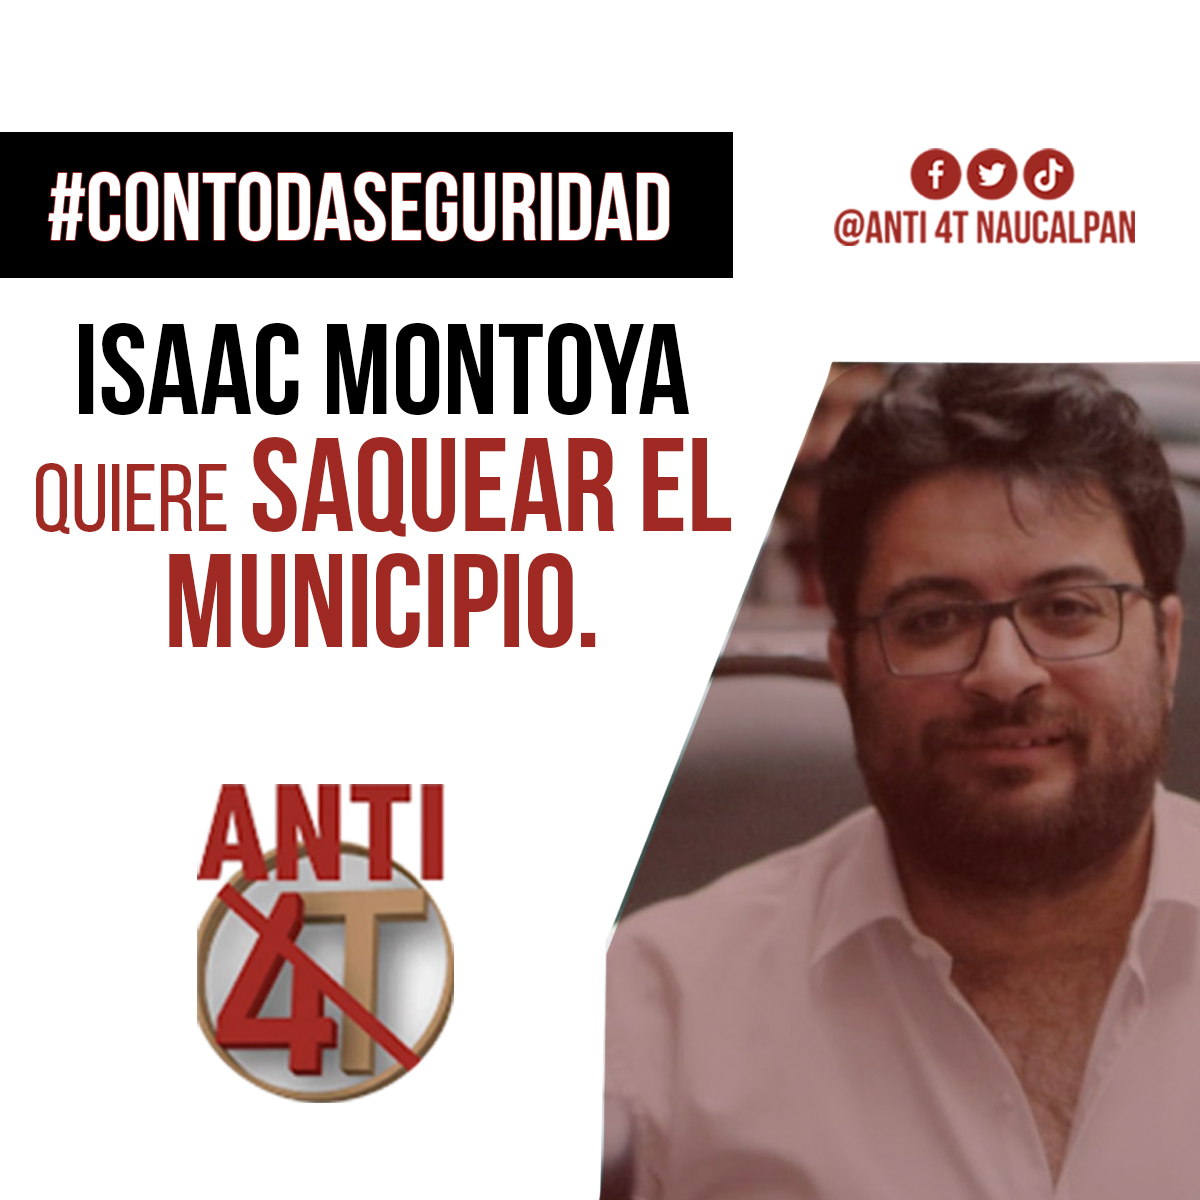 Isaac Montoya es un títere de los que han robado Naucalpan por años.

#ConTodaSeguiridad el mapache va a servir en bandeja de plata el municipio a los Durán y compañía.

#MapacheMontoya #DiputadoDelincuente #DelincuenteElectoral #NarcoPresidenteAMLO #NarcopartidoMorena